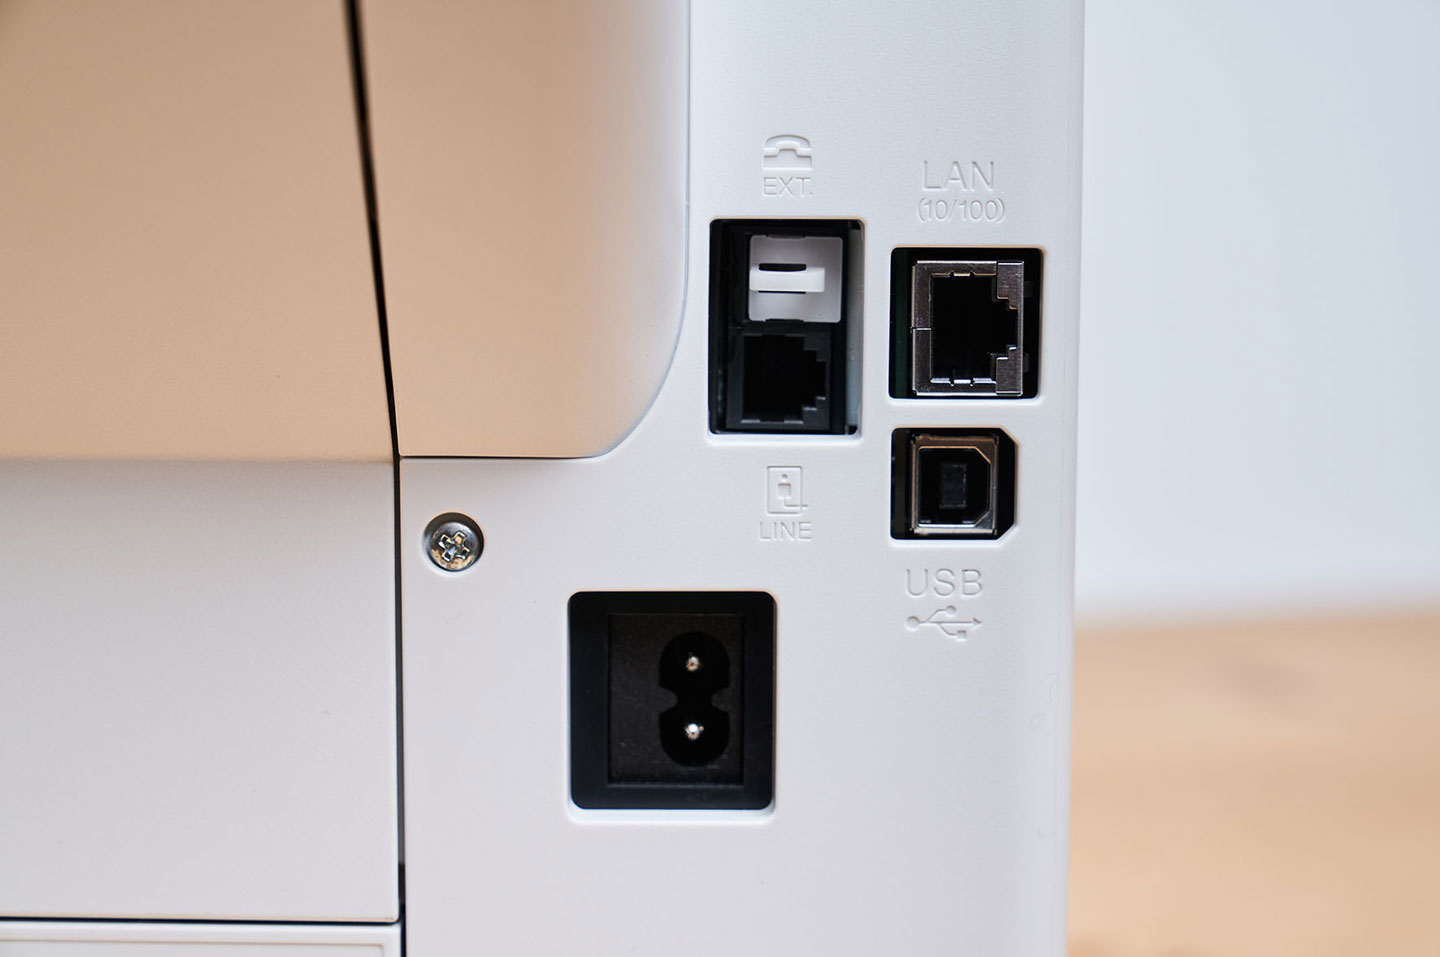 連結埠可看到 8字型電源接口、傳真接口、RJ-45 乙太網路接口、USB 接口。